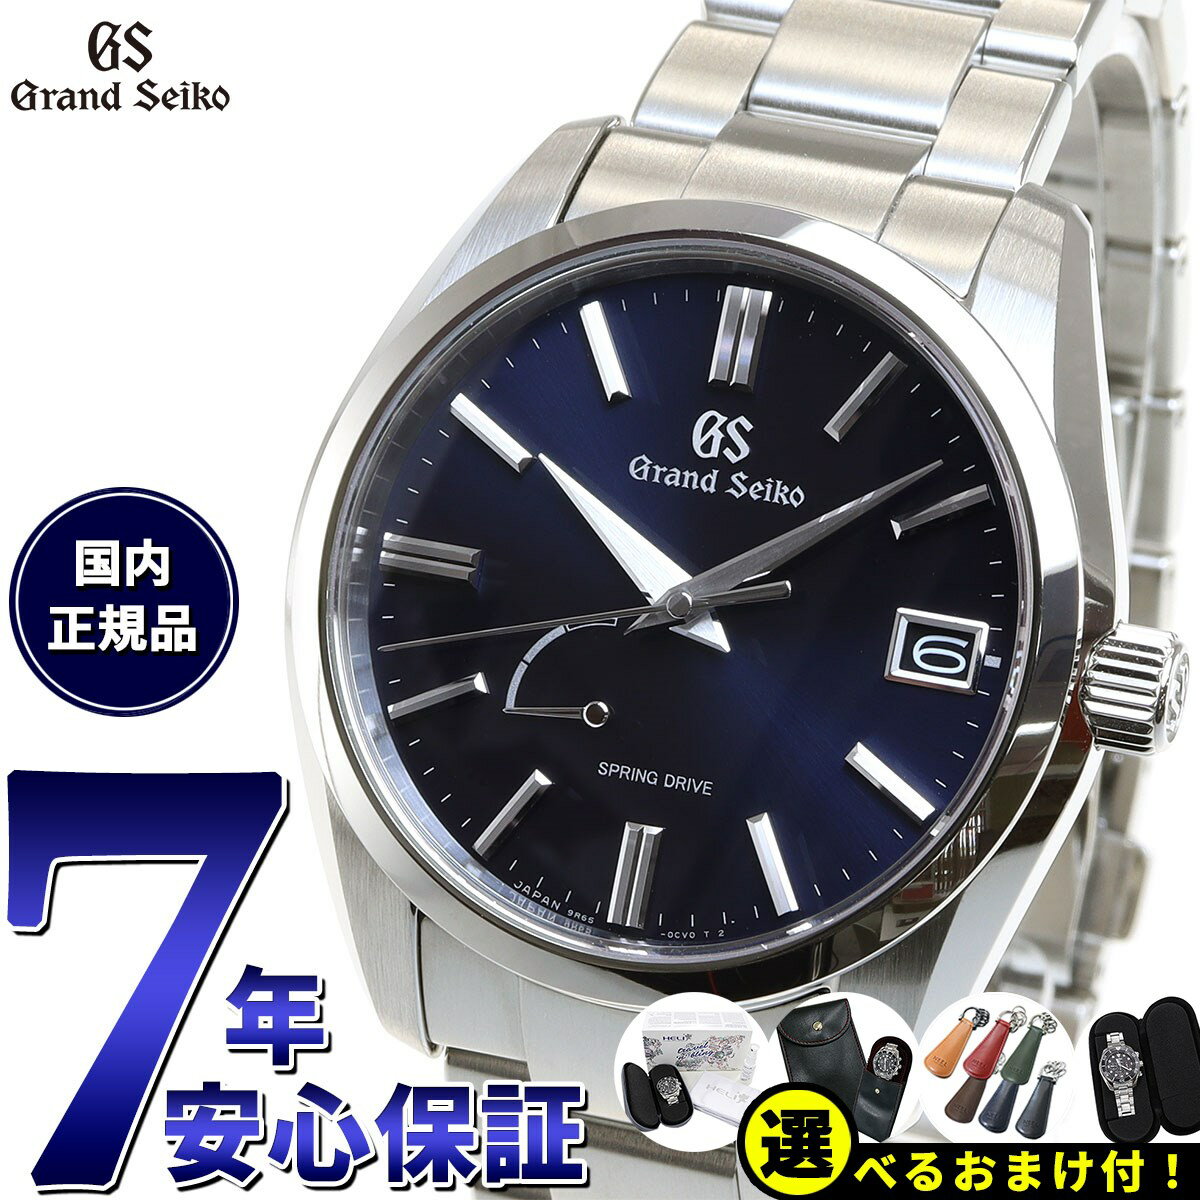 グランドセイコー GRAND SEIKO 腕時計 メンズ スプリングドライブ SBGA439